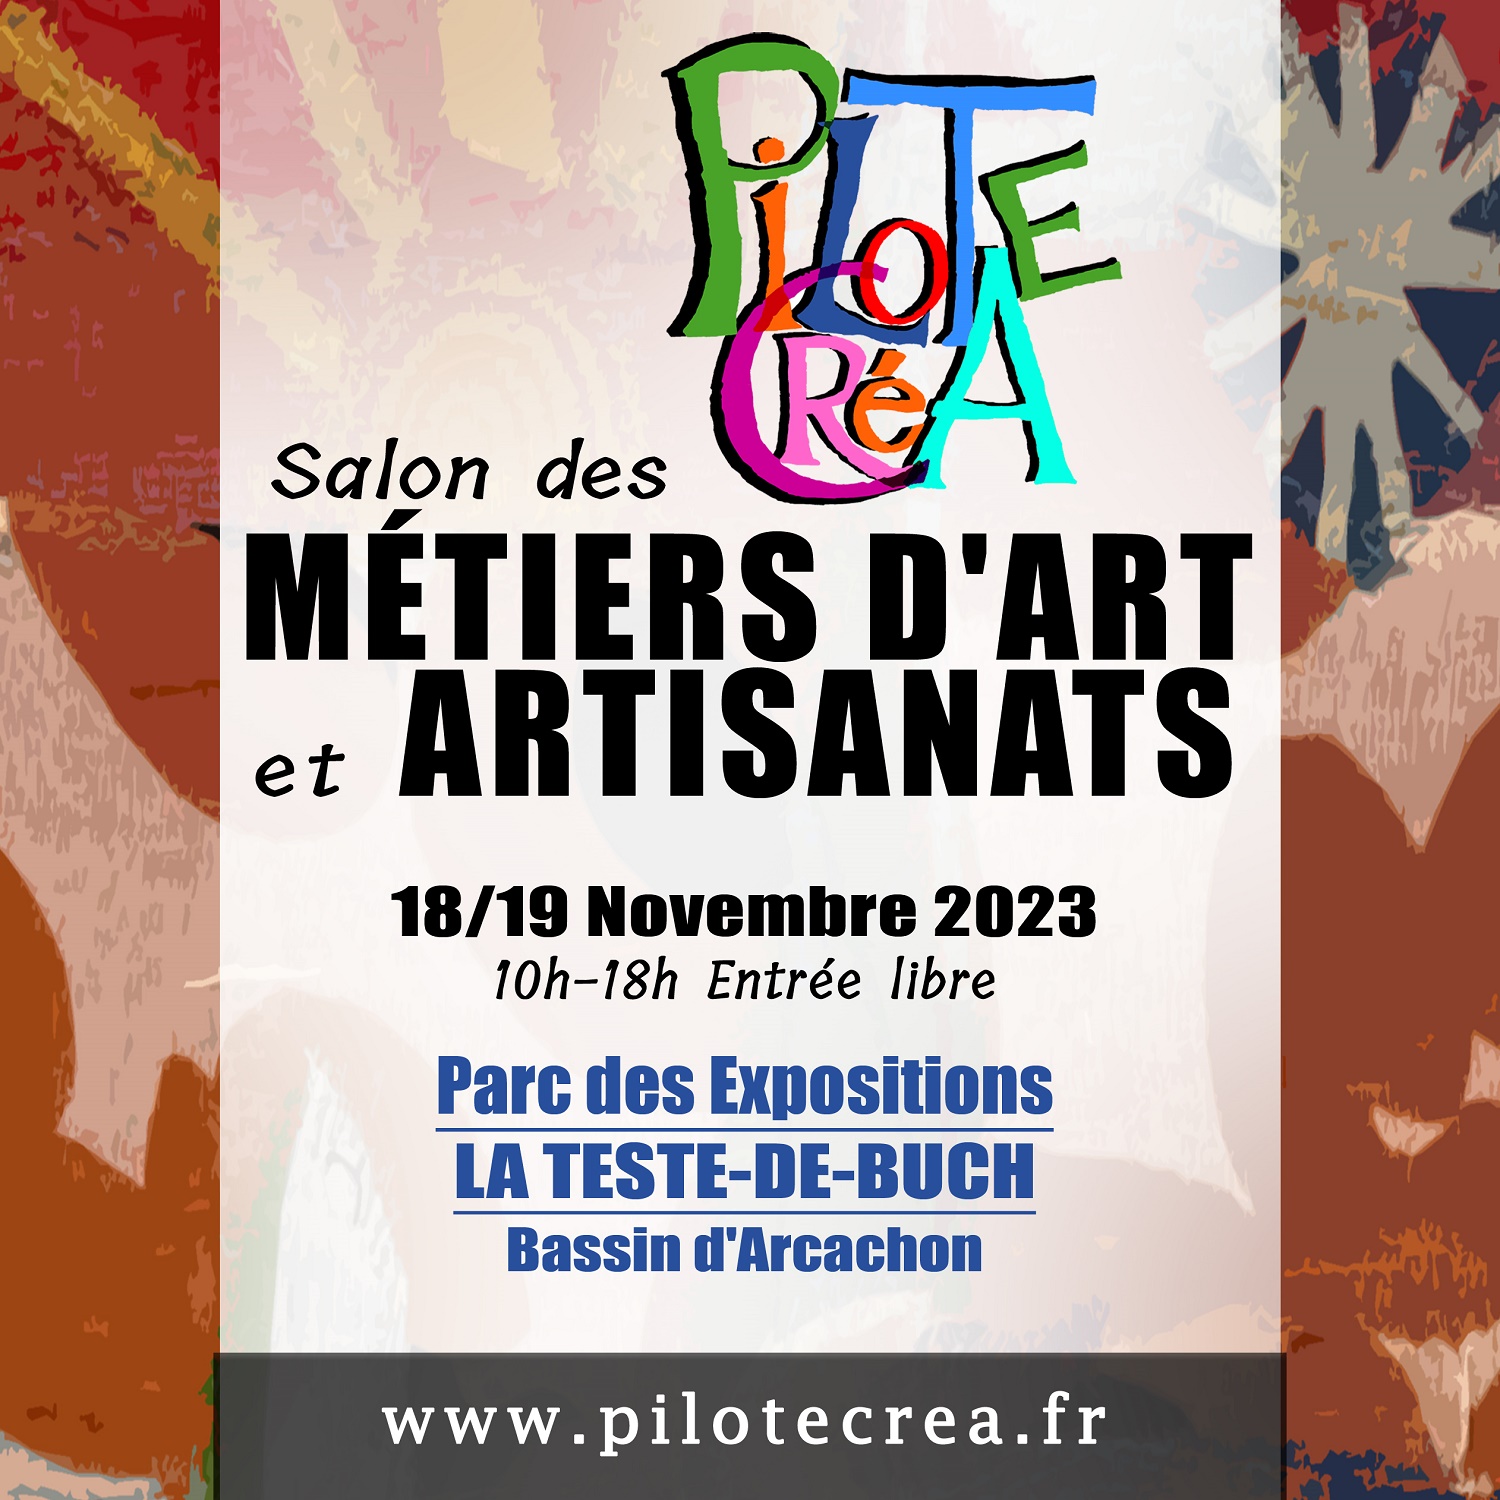 Salon des métiers d'art et artisanats à La Teste-de-Buch novembre 2023